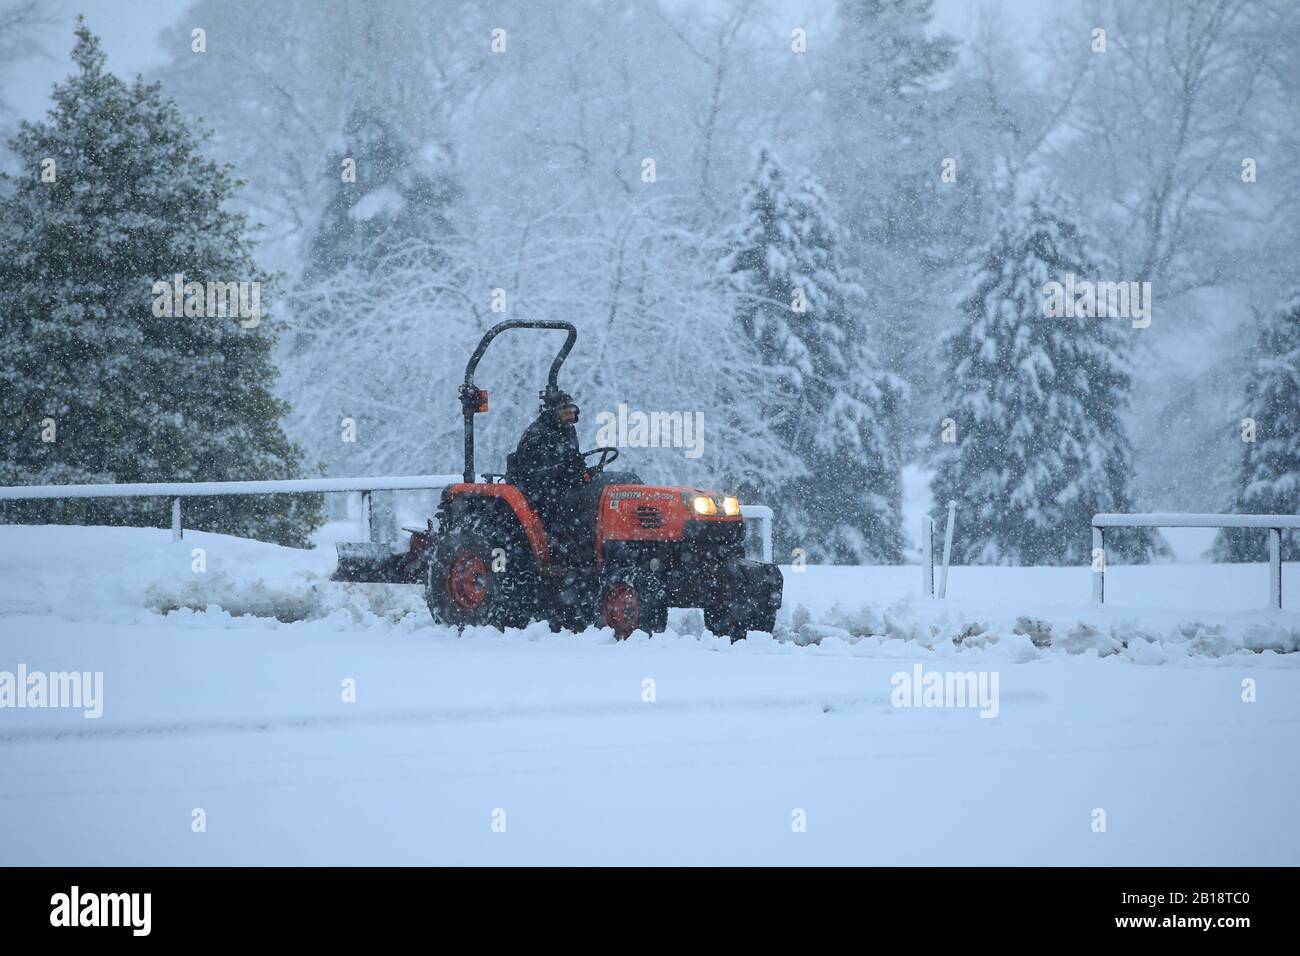 La neve viene eliminata dal parcheggio del Bedale Golf Club, North Yorkshire, dopo una notte di neve in alcune zone del Regno Unito. Foto Stock